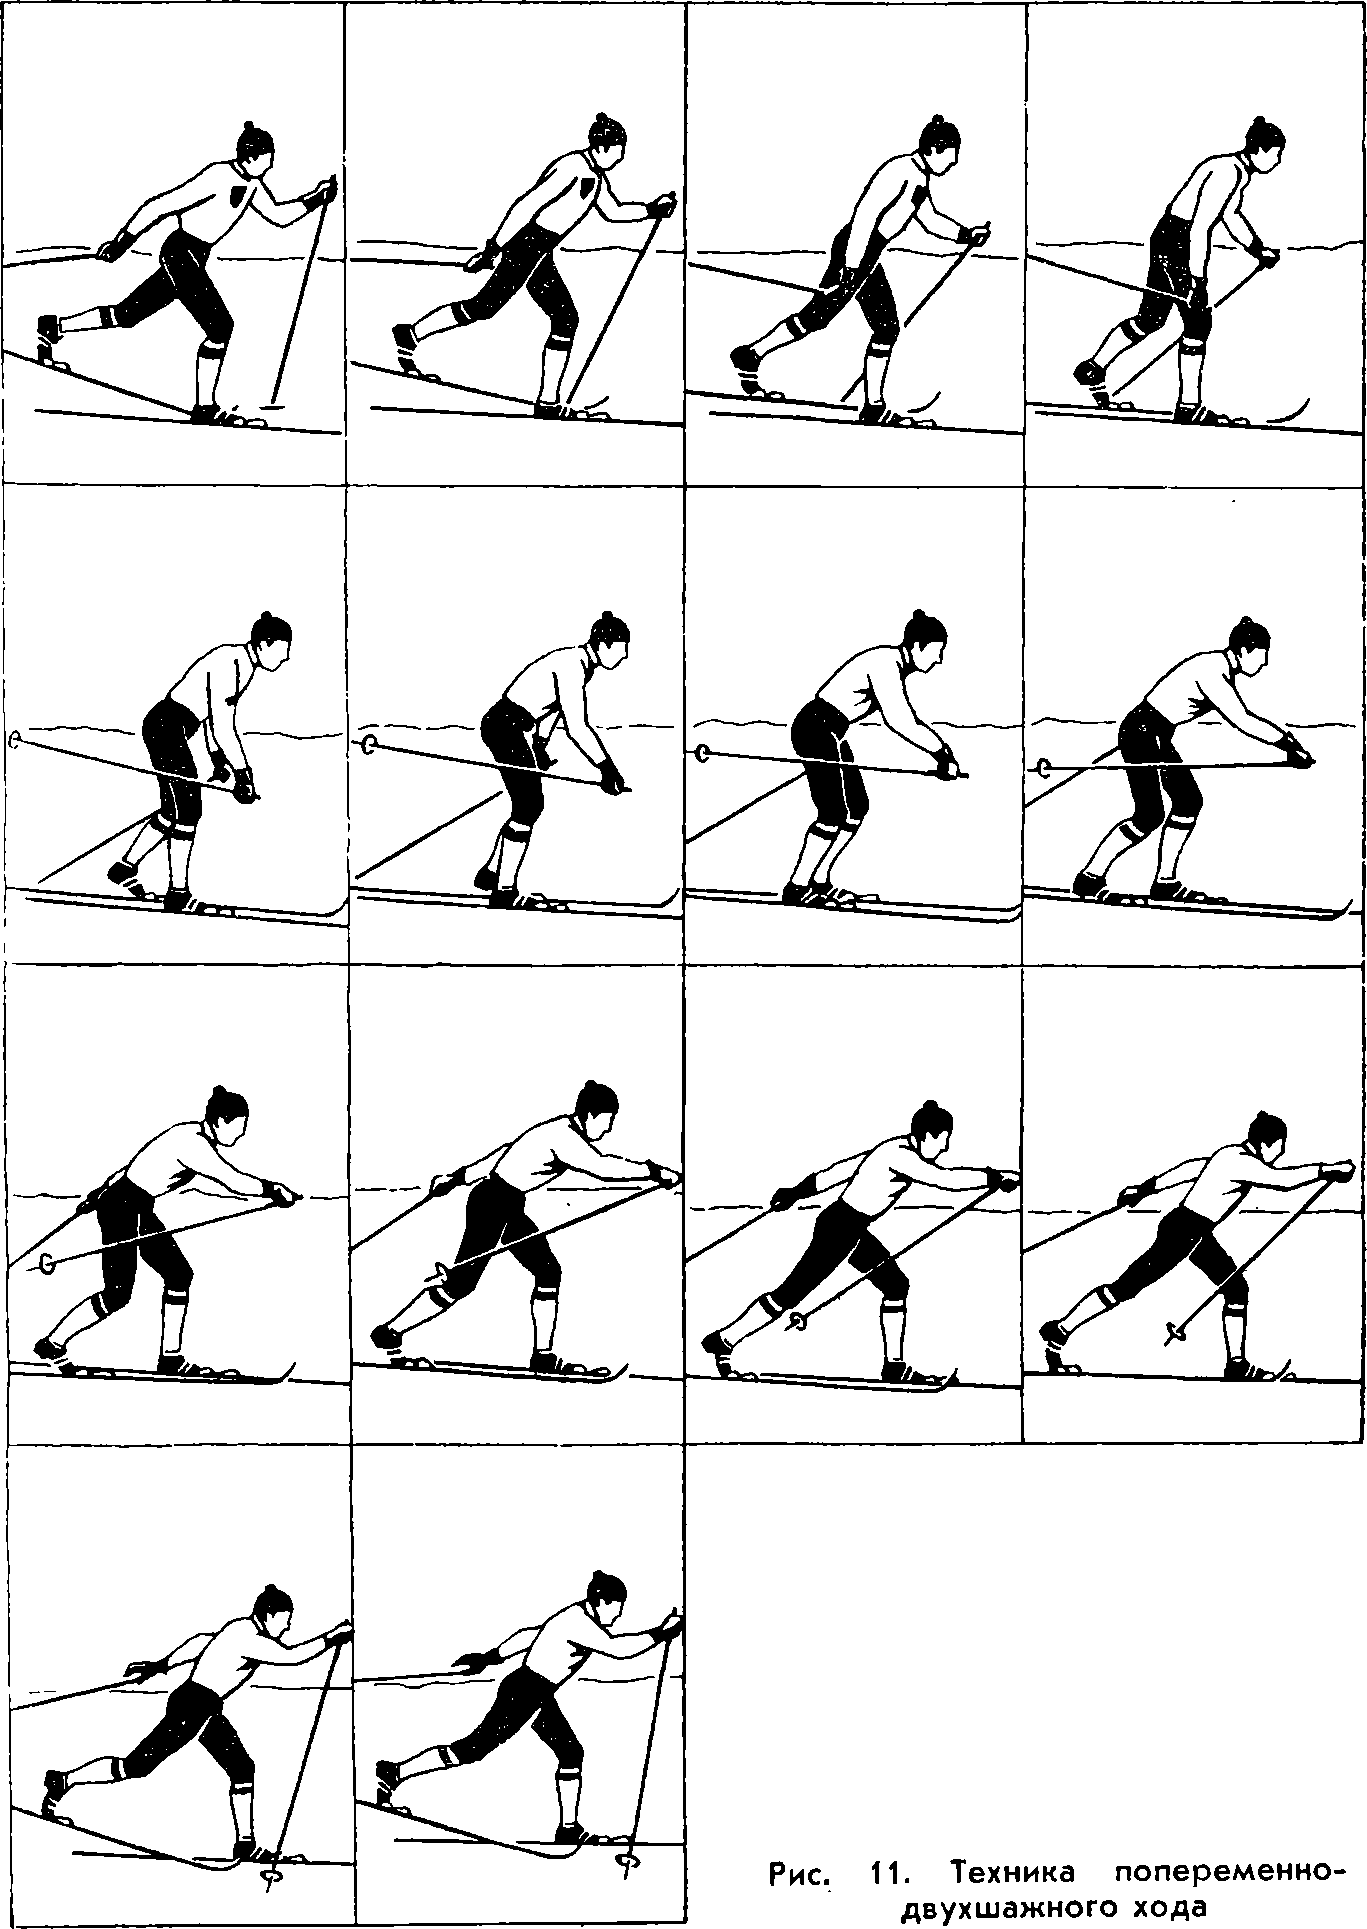 Передвижение скользящим шагом. Разминка на лыжах упражнения. Упражнение лыжник. Схема техники скользящего шага. Техника выполнения скользящего шага на лыжах.